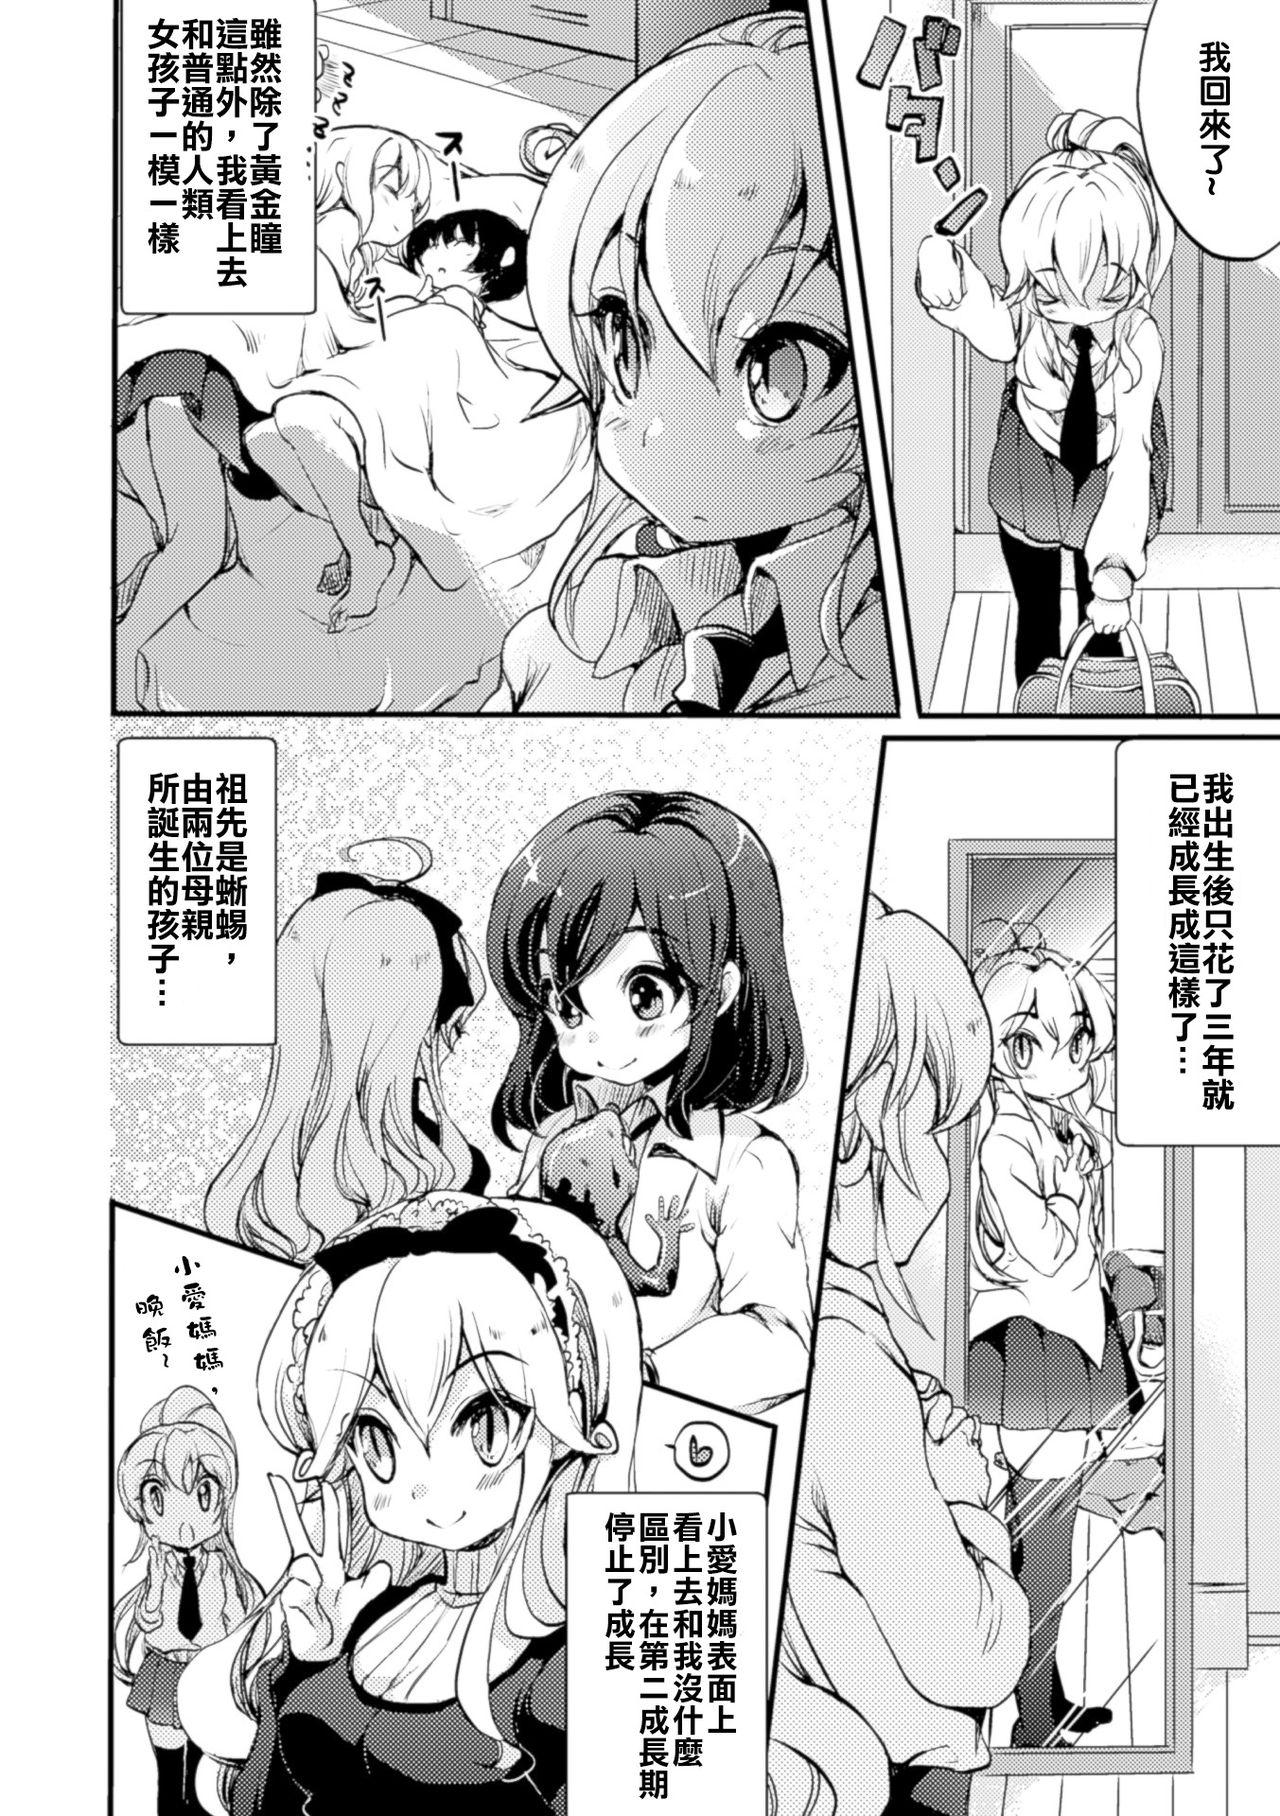 Licking Himitsu no Tokage Hime 2 Latex - Page 7